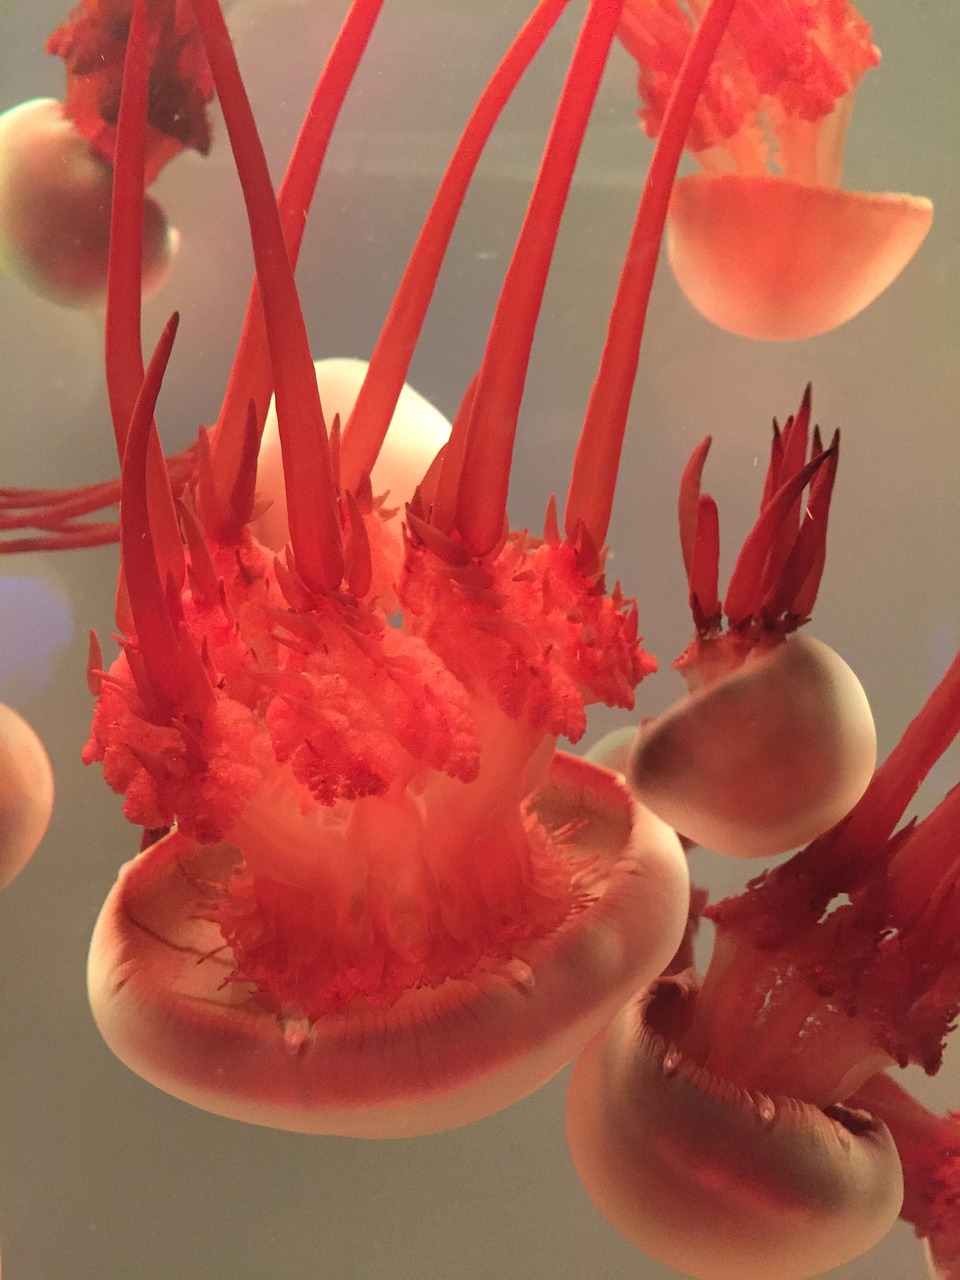 jellyfish aquarium close-up free photo